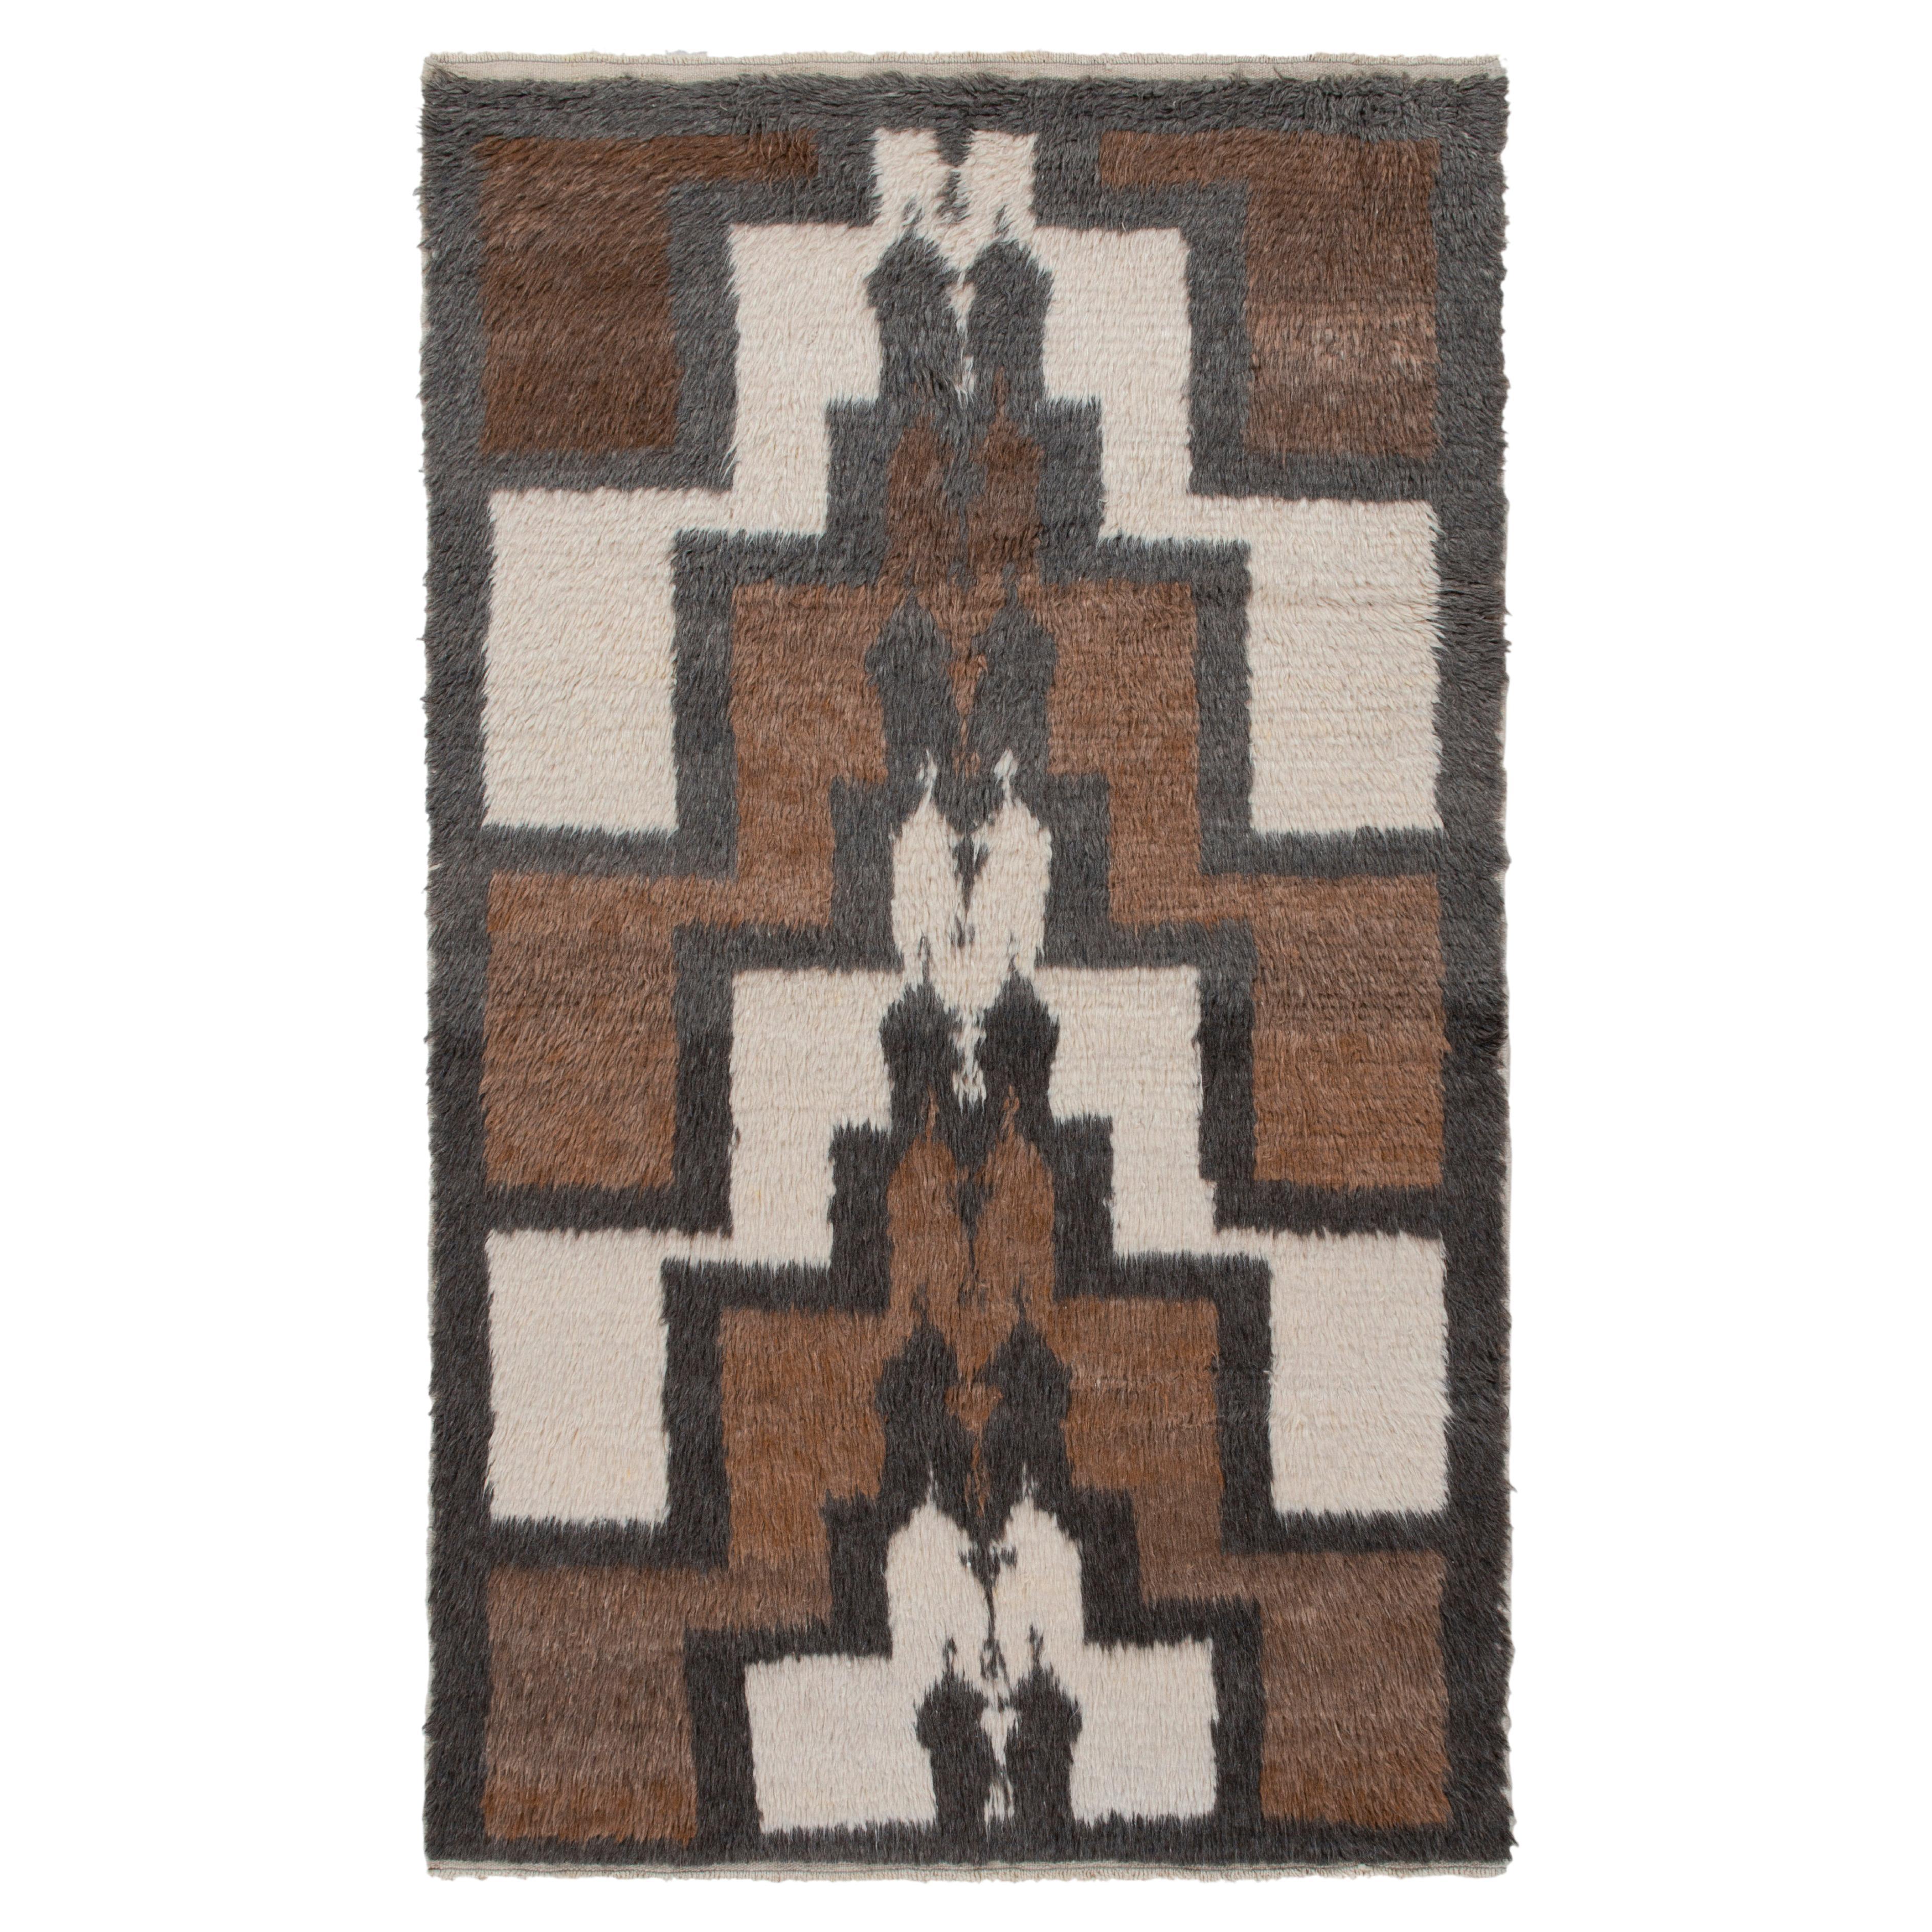 1950er Jahre Vintage Tulu Shag Teppich in Braun, Grau mit geometrischem Muster von Teppich & Kelim